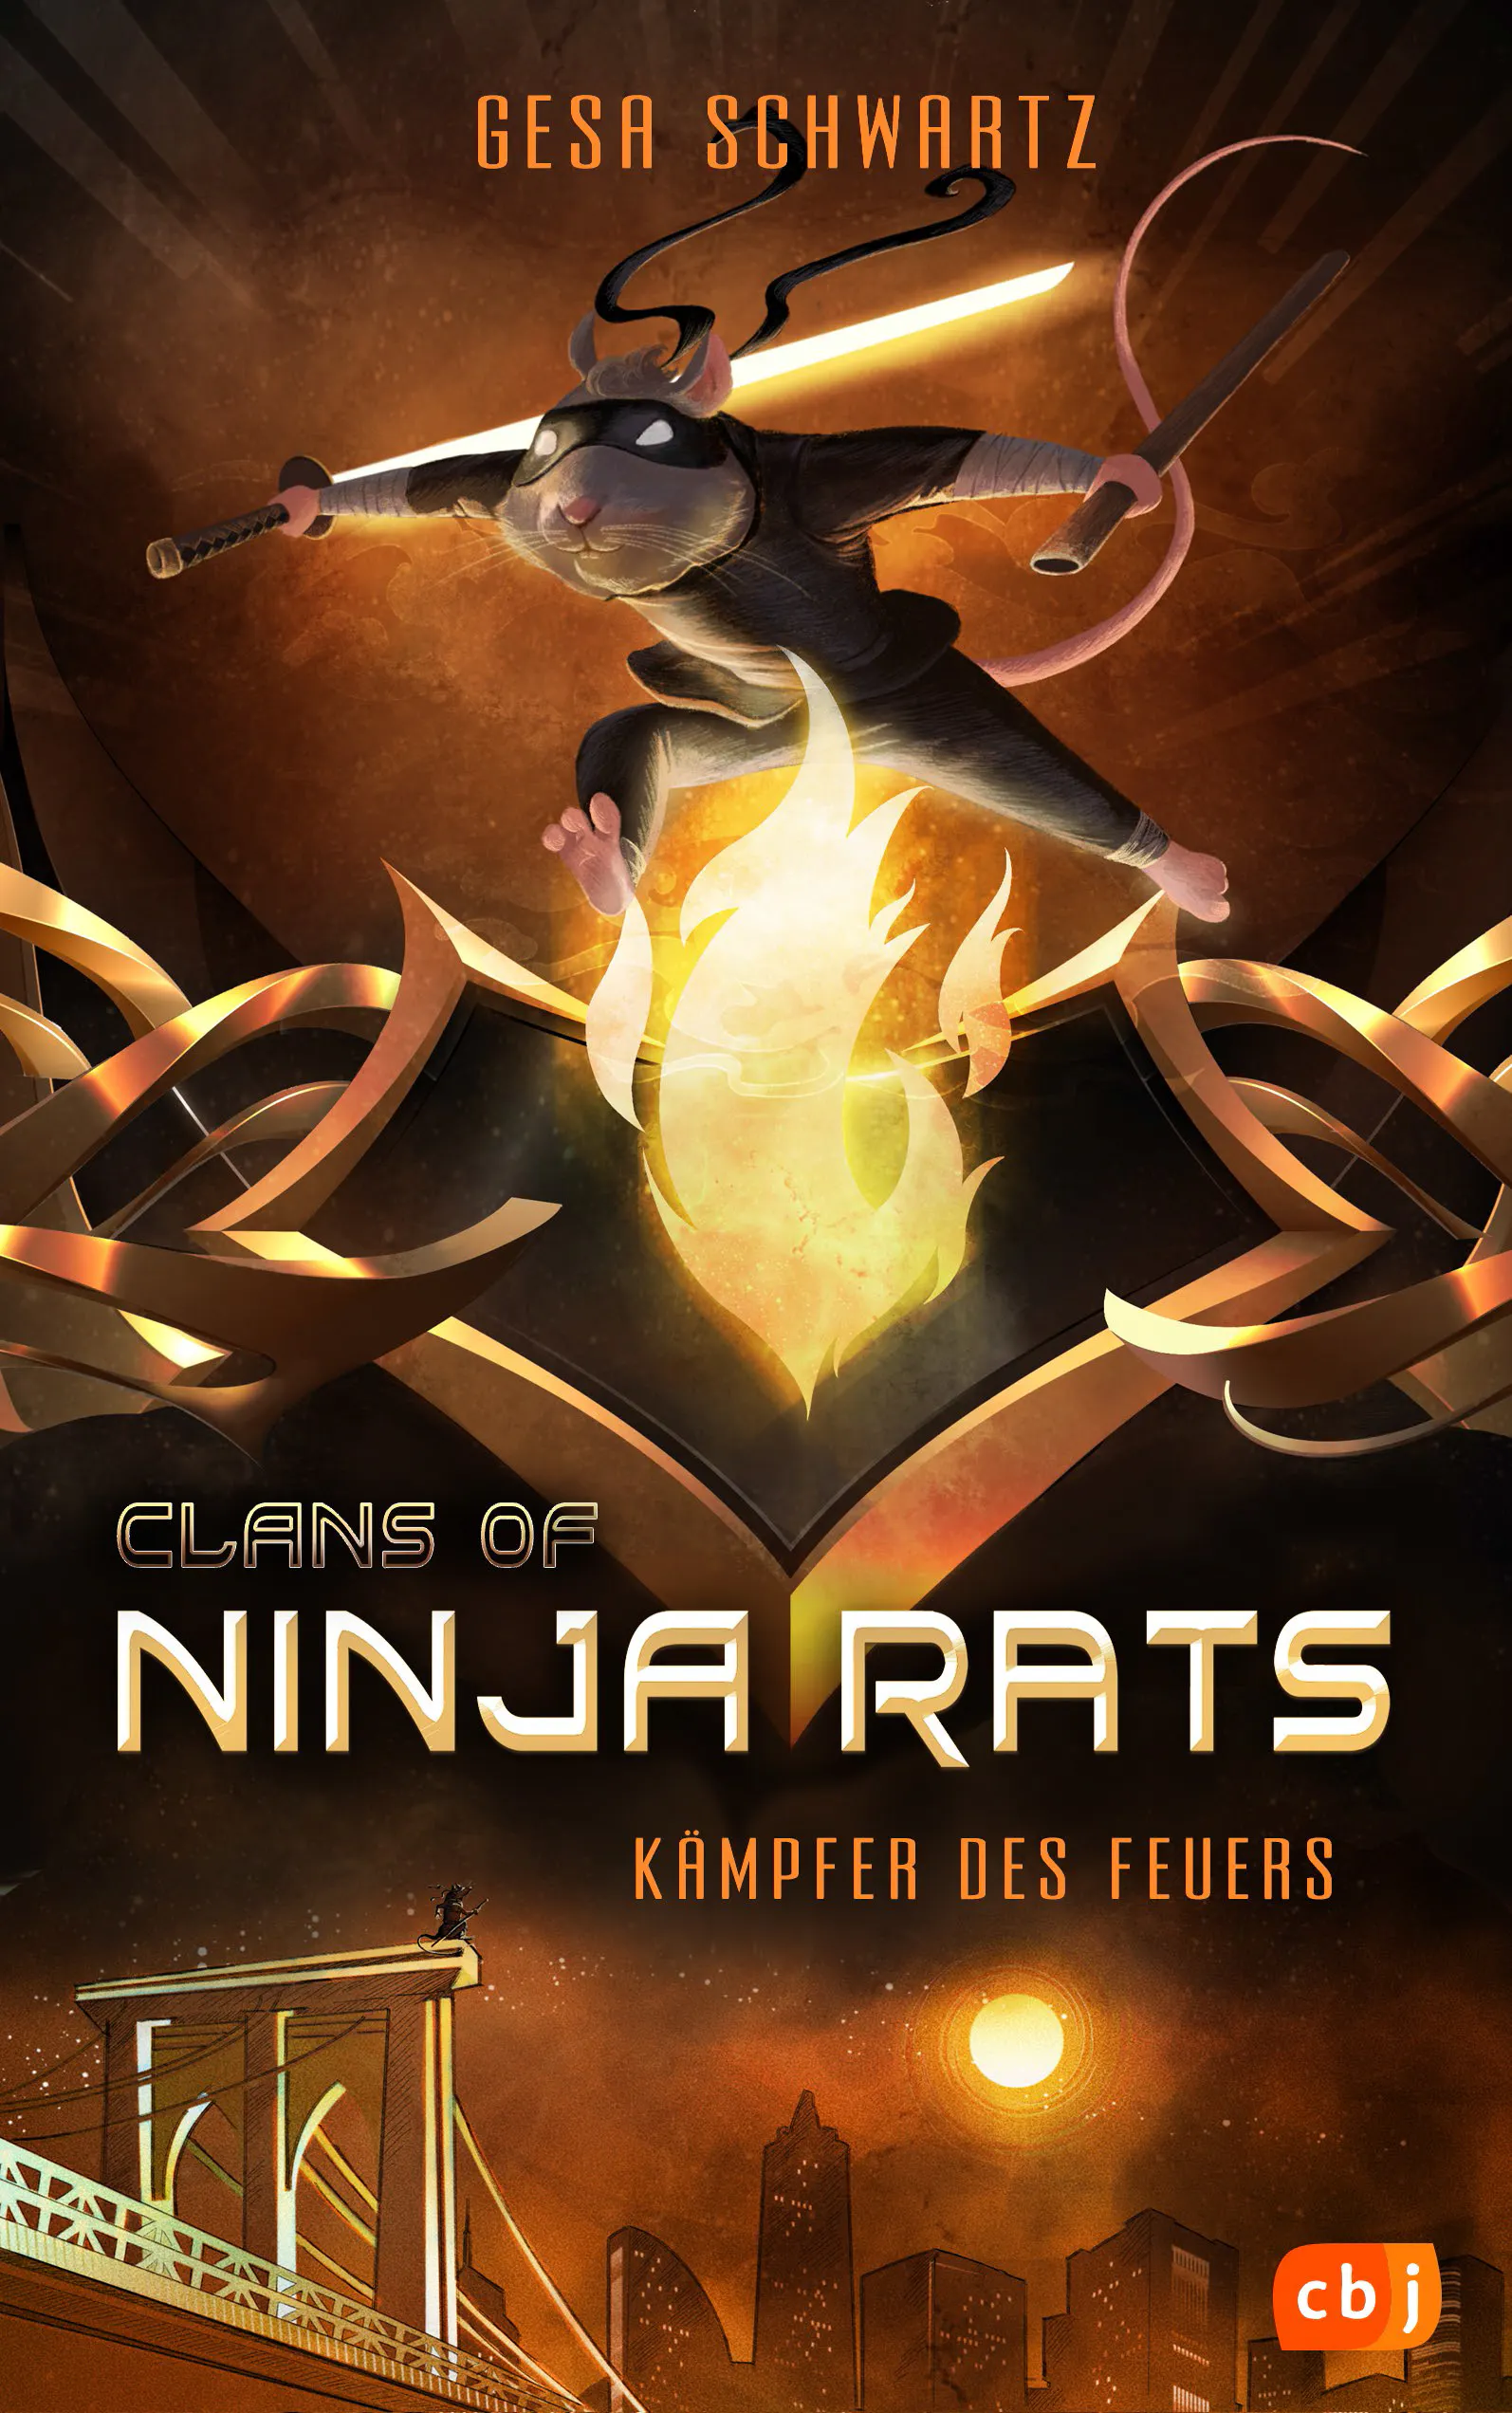 Cover von "Clans of Ninja Rats" von Autorin Gesa Schwartz aus dem cbj Verlag